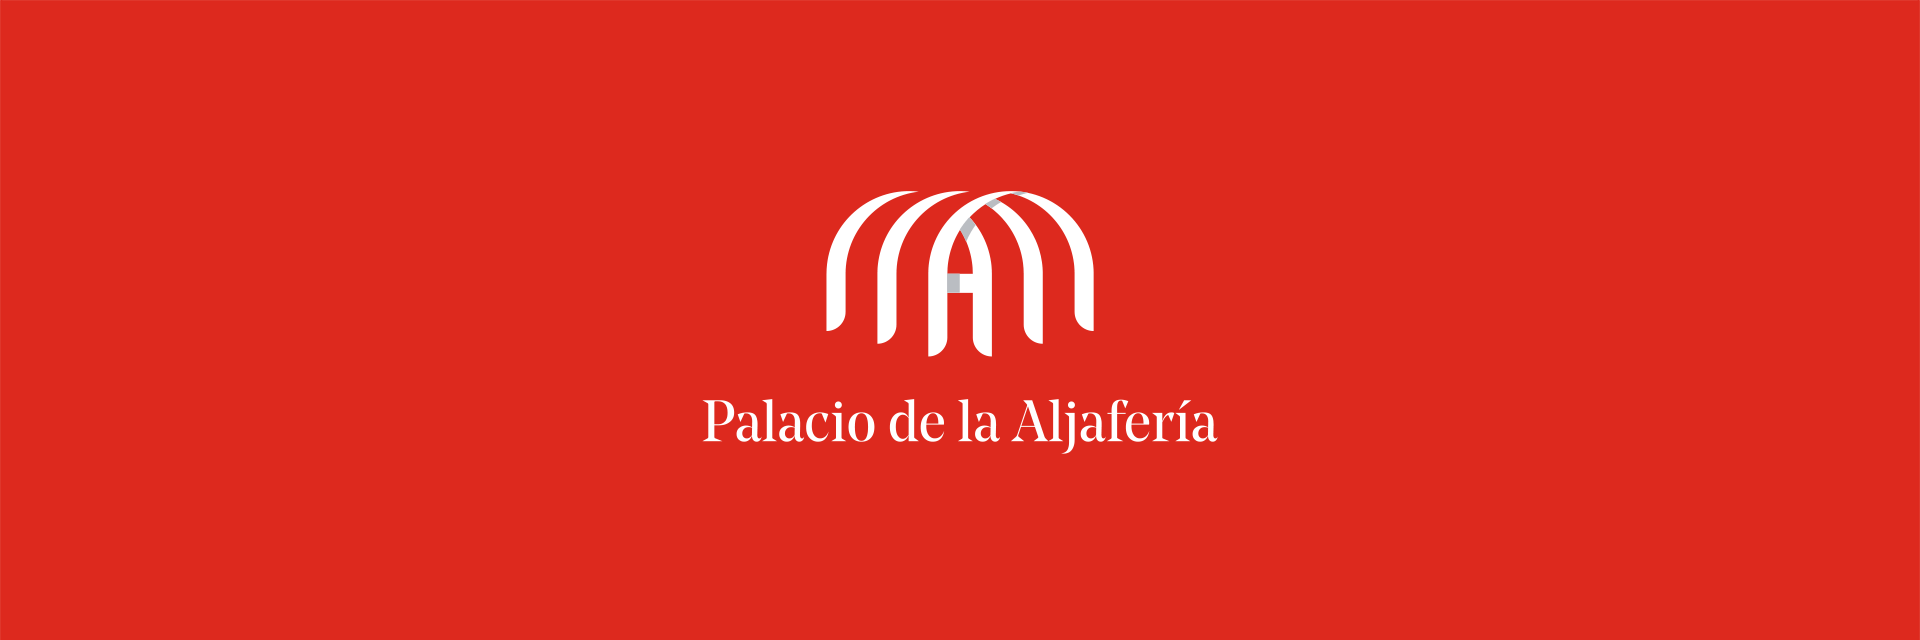 品牌视觉设计 . 西班牙阿尔哈菲利亚宫品牌视觉设计 